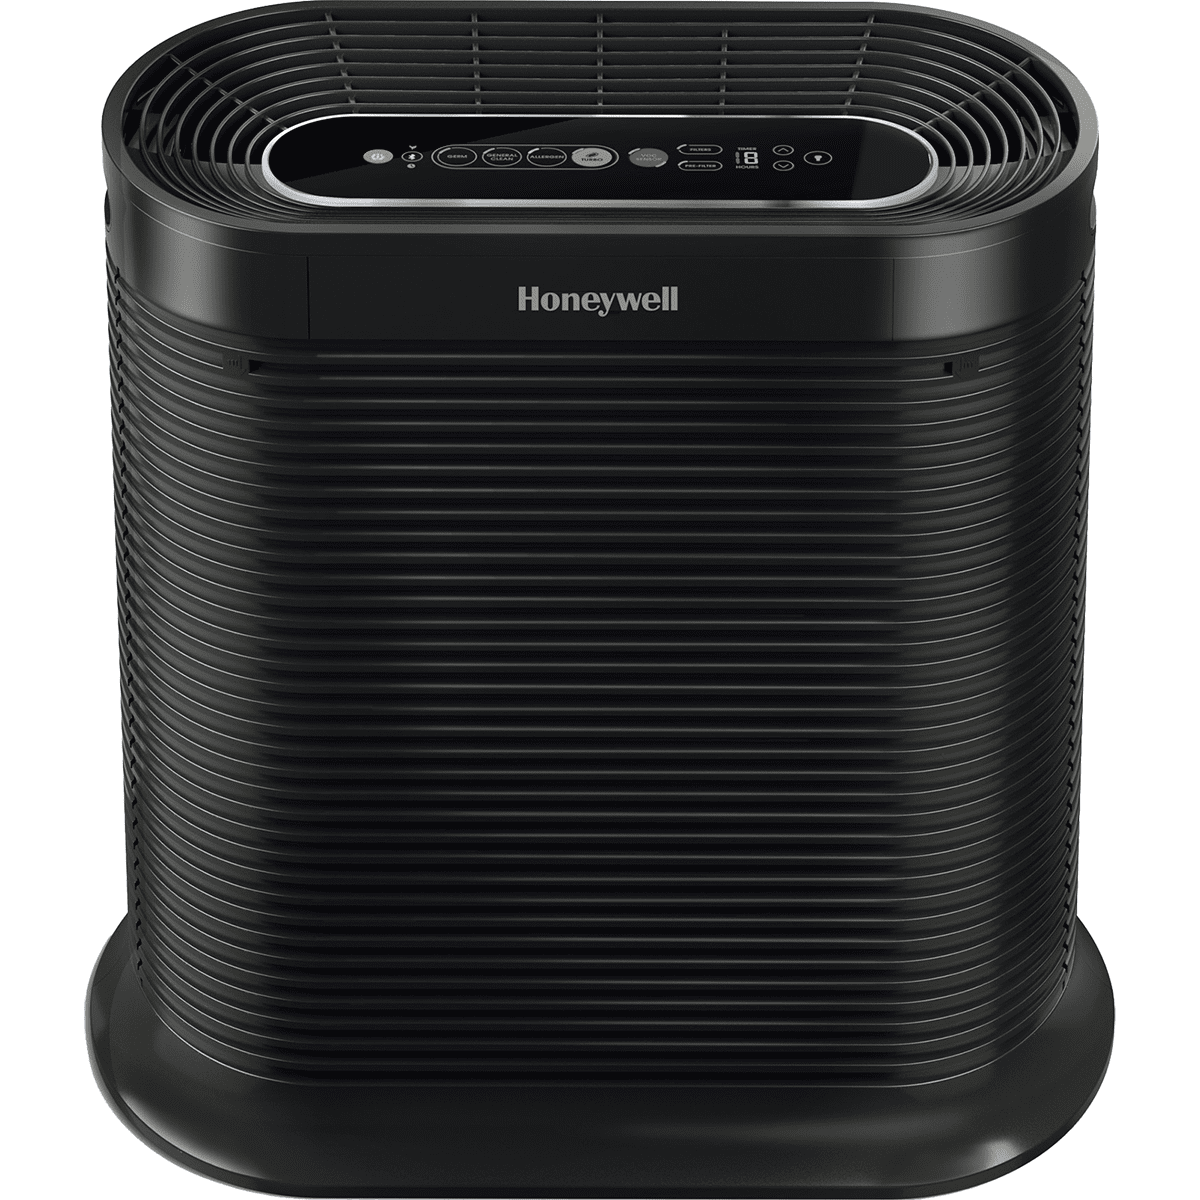 Honeywell Bluetooth Smart HEPA Air Purifier